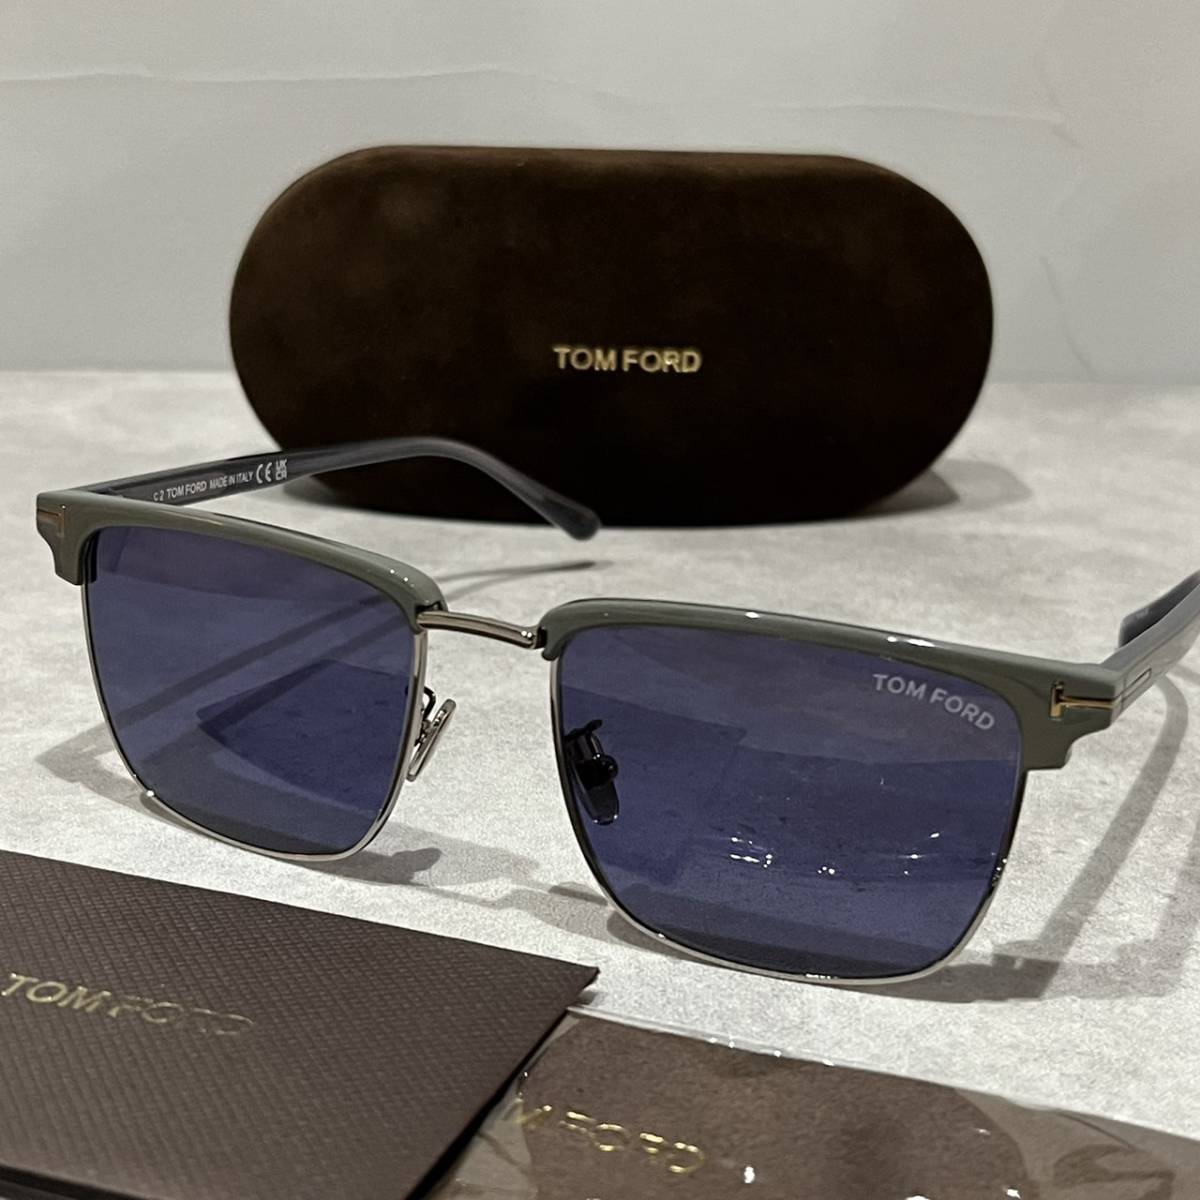 【送料無料】【正規品・新品】TOMFORD トムフォード TF997 FT997 51V フルリム ウェリントン ボストン イタリア製 サングラス メガネ 眼鏡